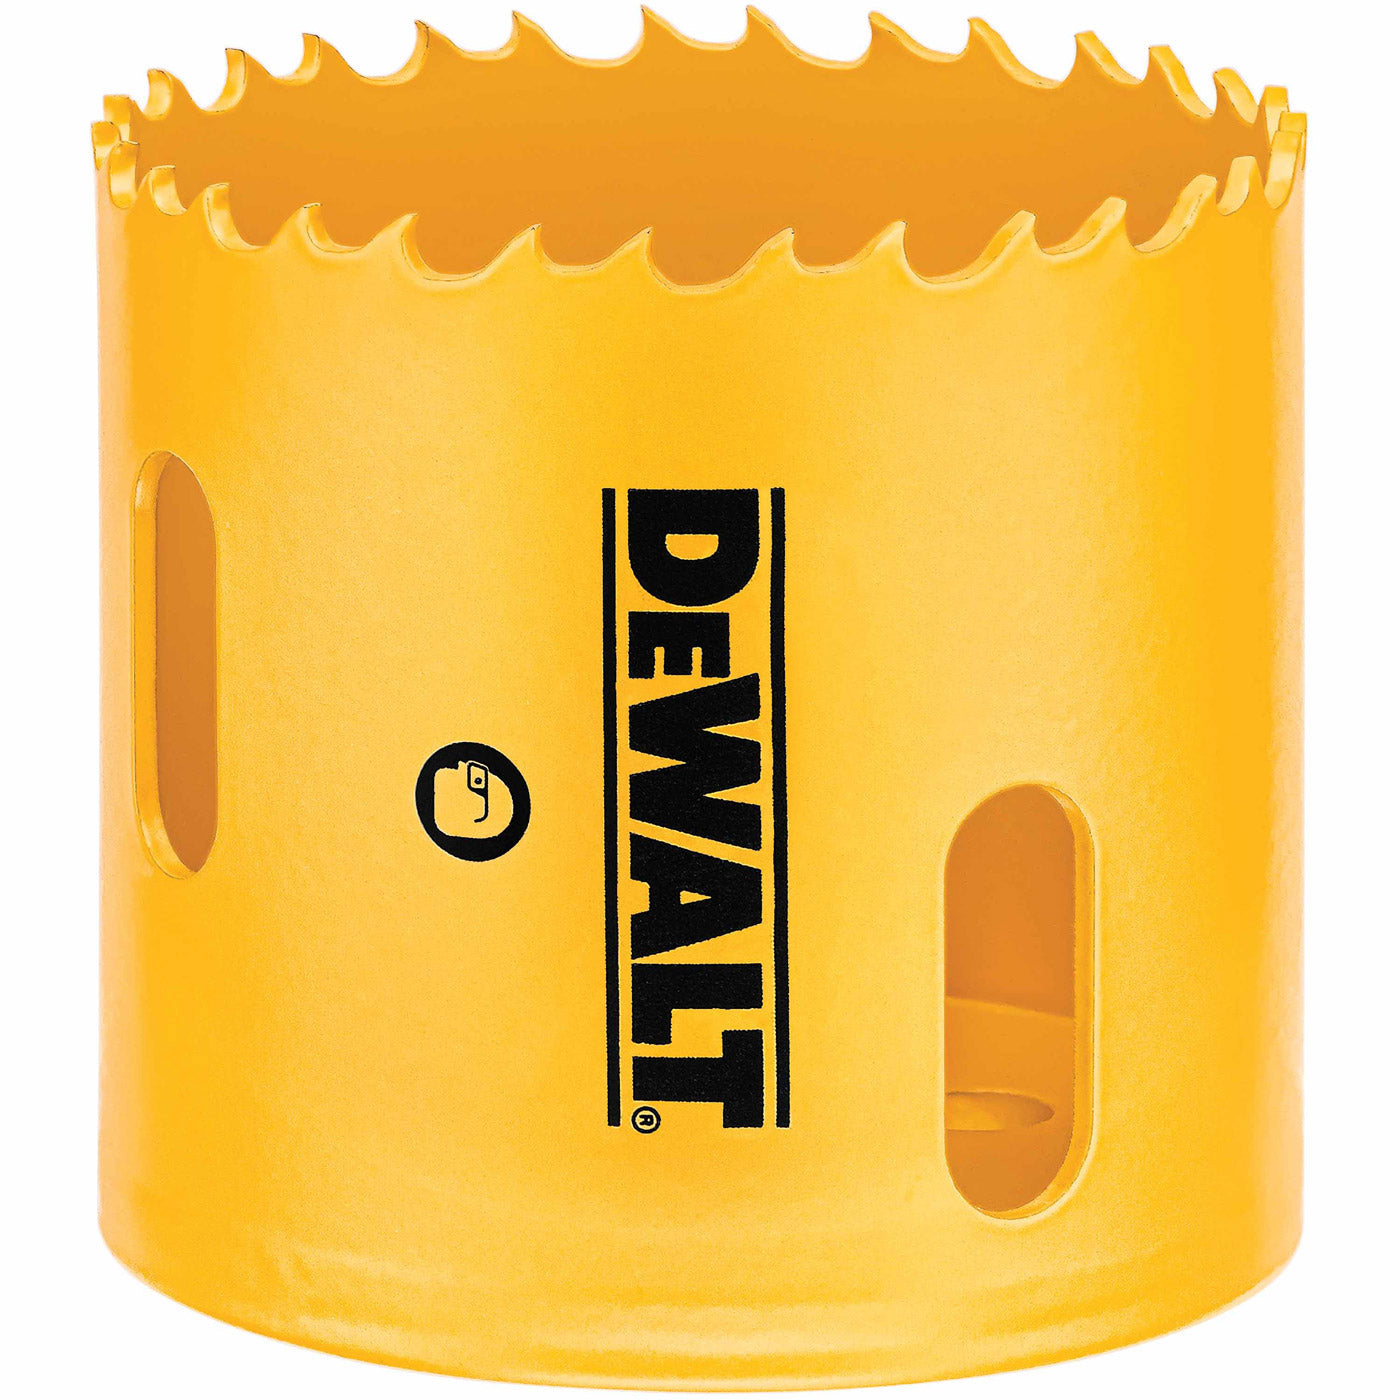 DeWalt D180032 2" (51mm) Bi-Metal Hole Saw